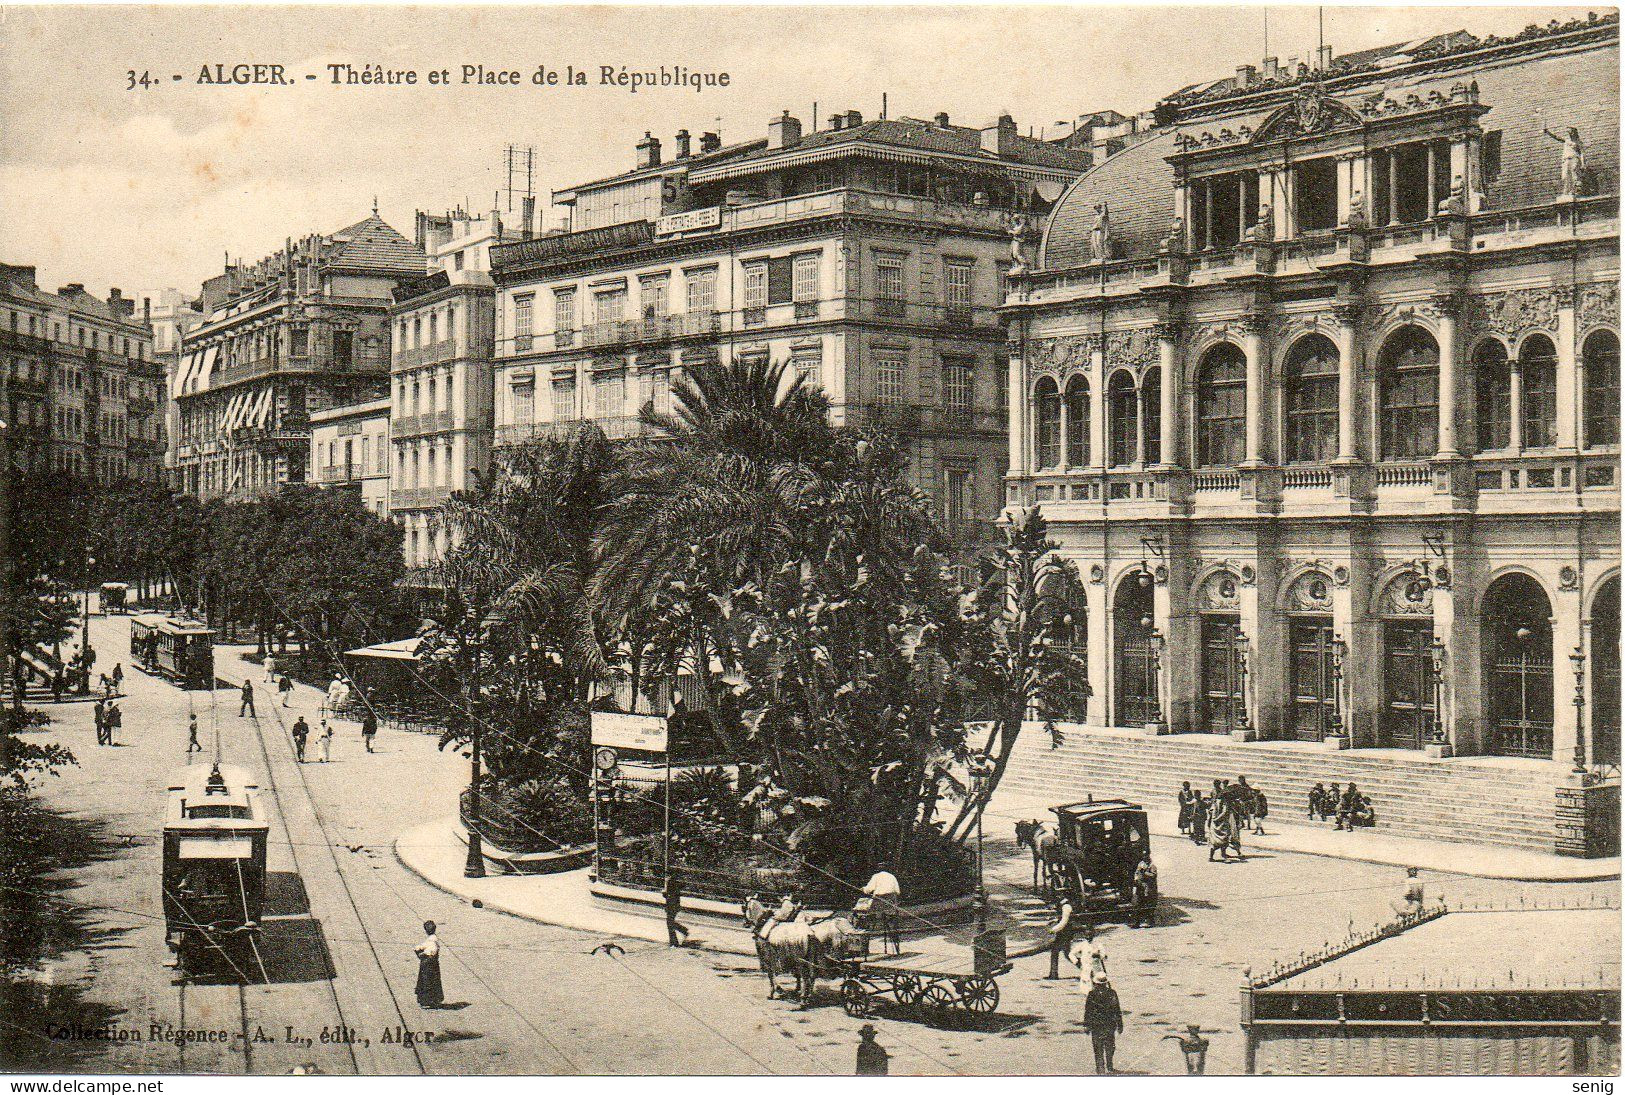 ALGERIE - ALGER - 34 - Tléâtre Place De La République - Collection Régence A. L. édit. édit. Alger (Leroux) - Alger